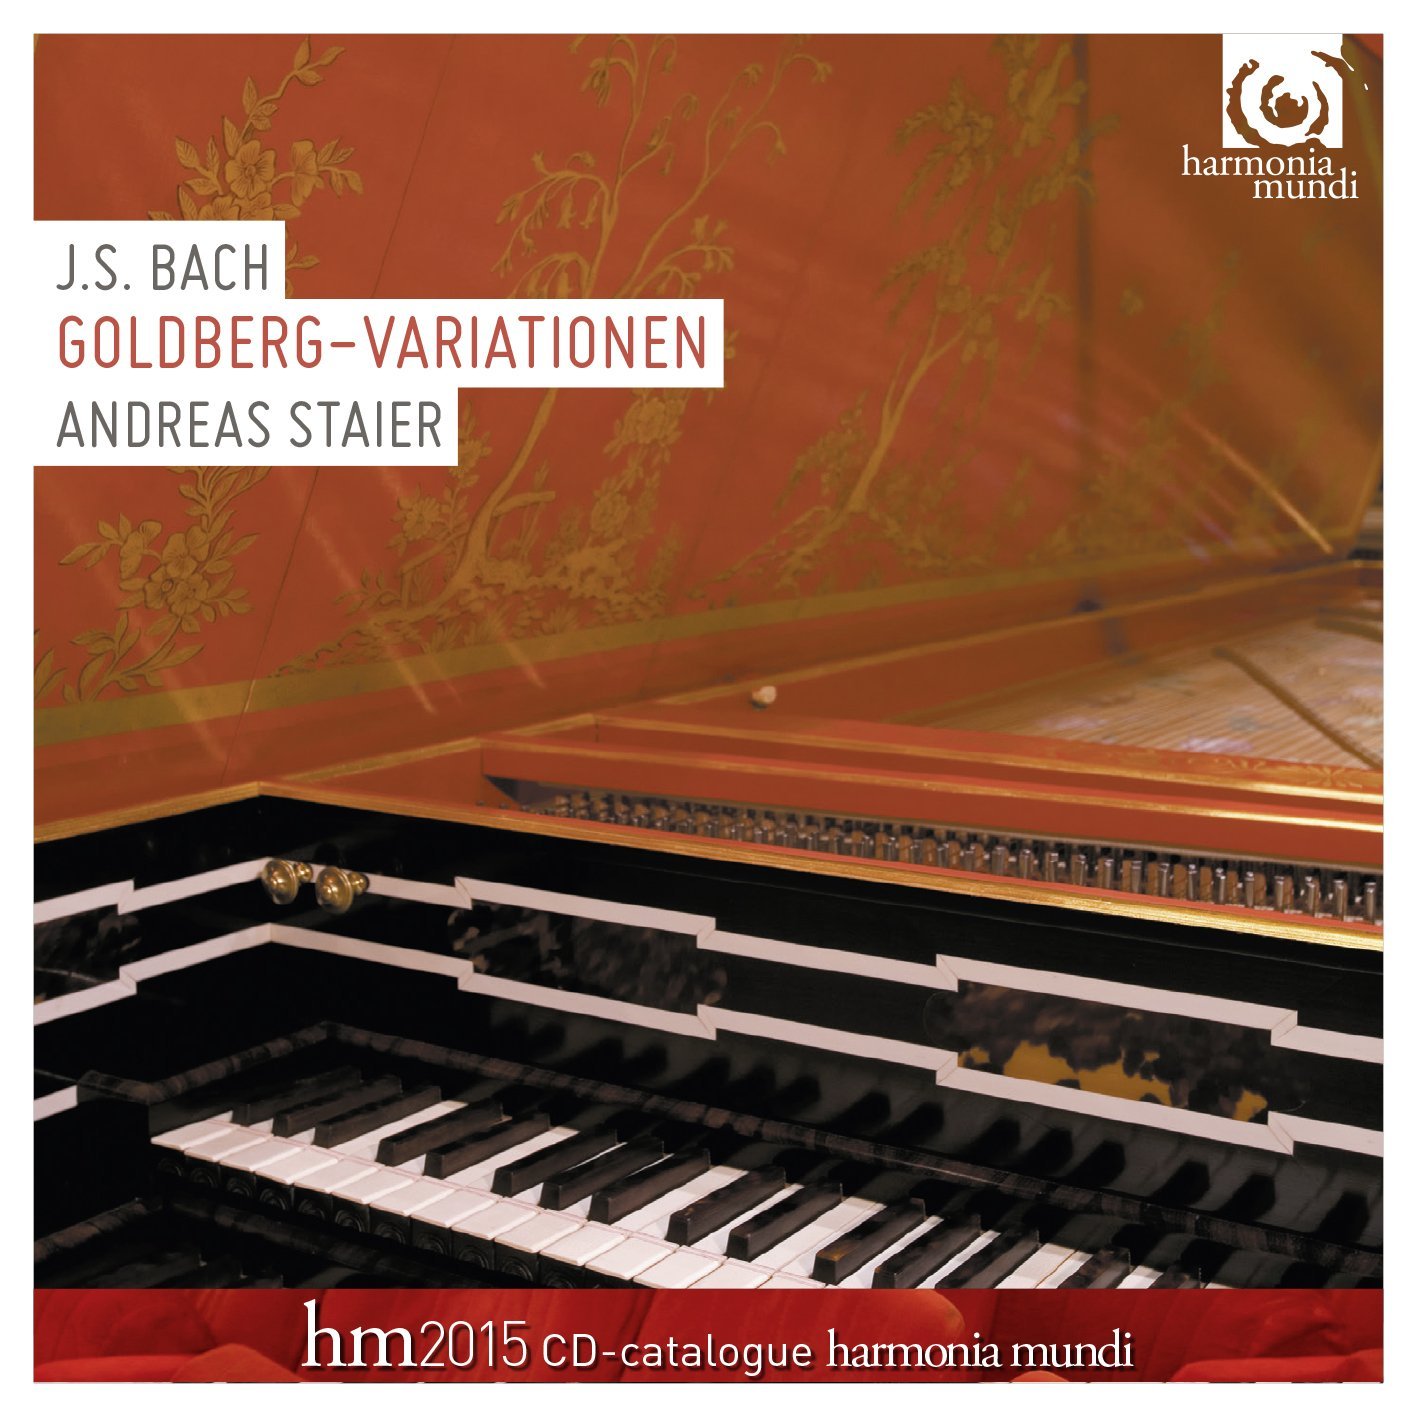 Audio Cd Johann Sebastian Bach - Variazioni Goldberg Bwv 988 - Staier Andreas Cv NUOVO SIGILLATO, EDIZIONE DEL 04/11/2014 SUBITO DISPONIBILE